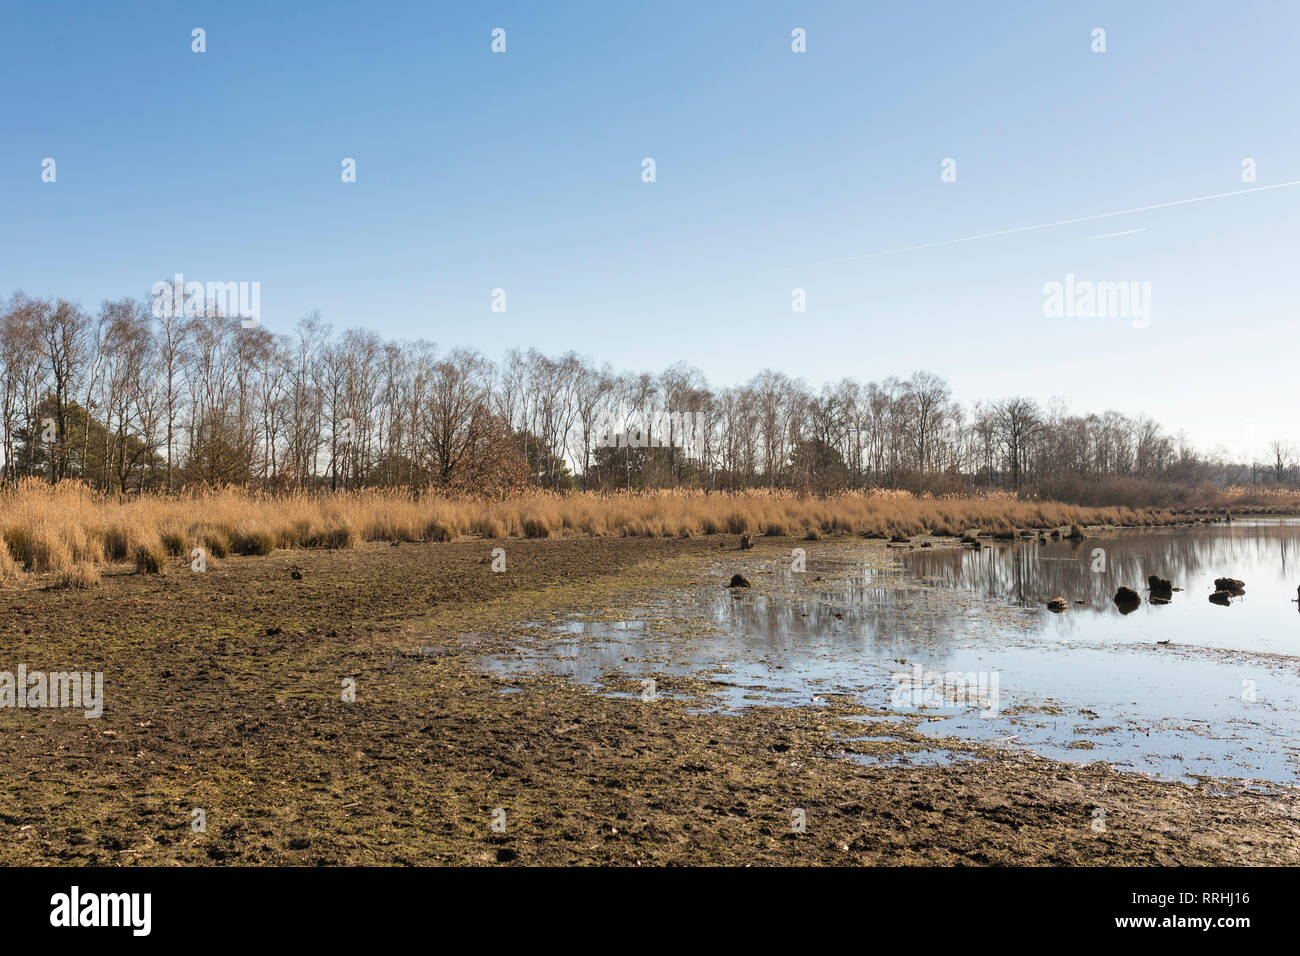 Escasez de agua en un lago en 'Cartierheide' en invierno, debido a la sequía del verano de 2018 y a un invierno seco. Países Bajos. Foto de stock